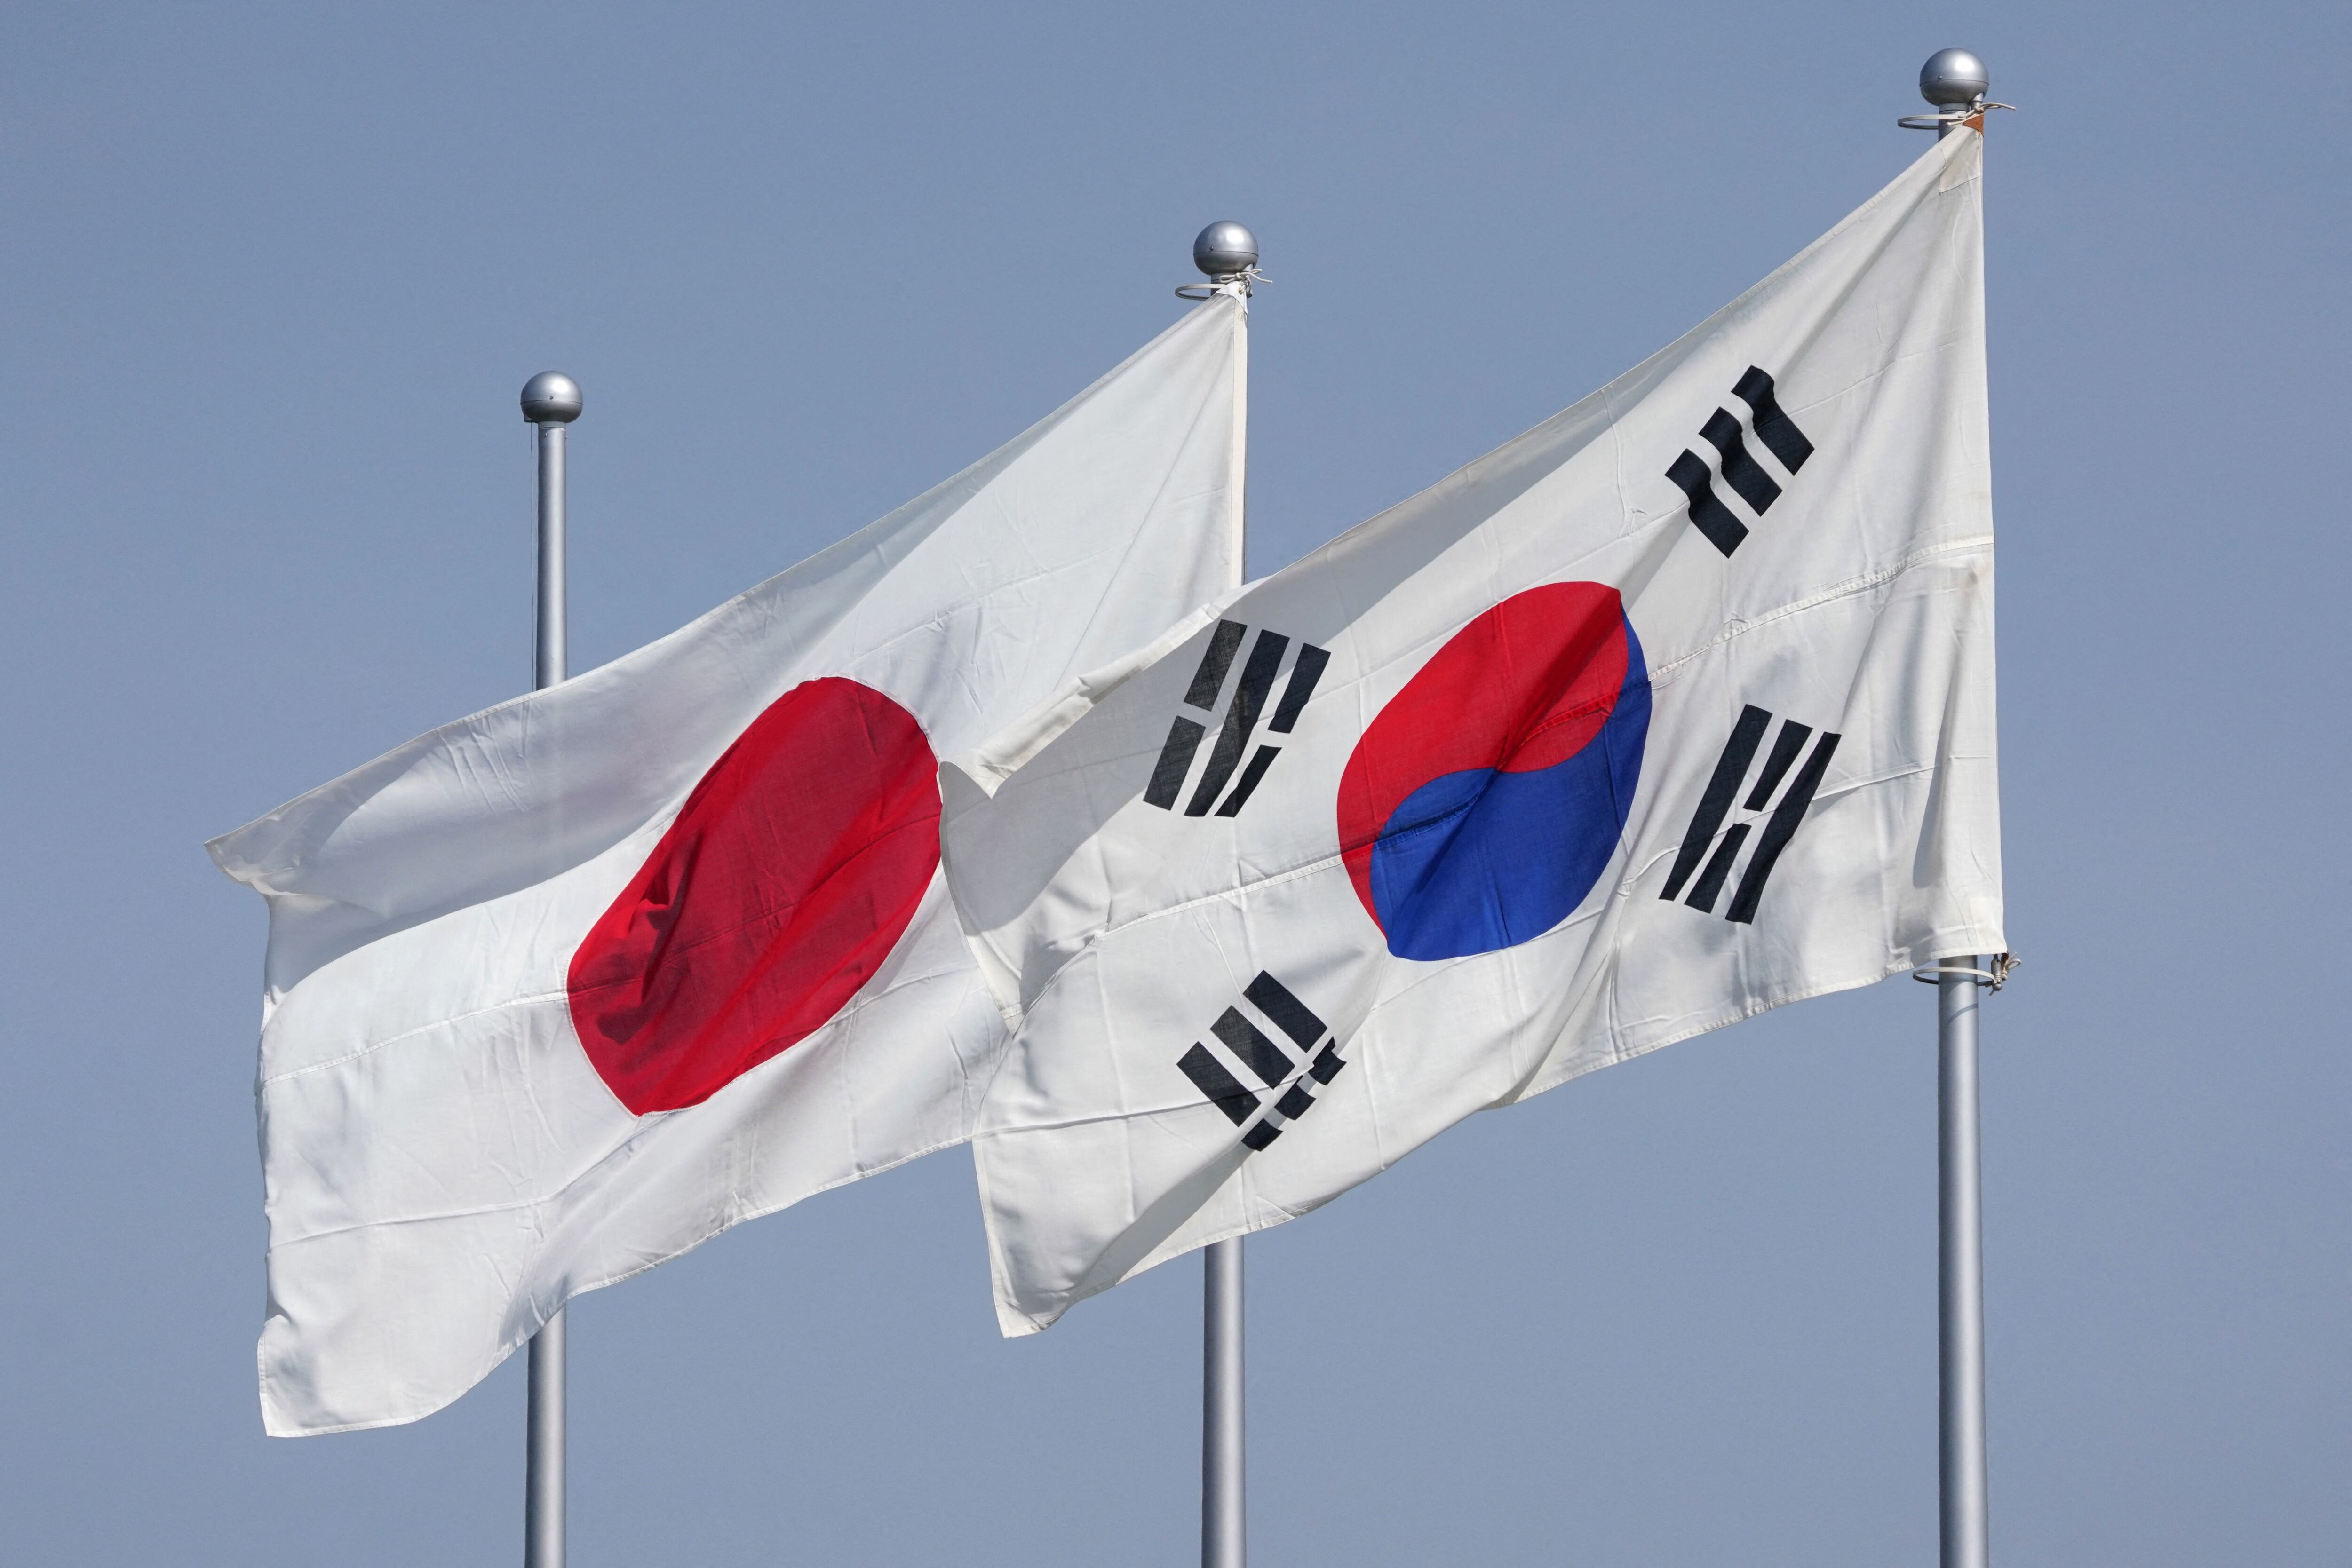 Las banderas nacionales de Japón (i) y Corea del Sur (d) ondean al viento antes de la llegada del presidente de Corea del Sur, Yoon Suk Yeol, al aeropuerto Haneda de Tokio el 16 de marzo de 2023. Estaba previsto que Yoon llegara a Tokio para una cumbre destinada a impulsar los lazos frente a la creciente agresión de Pyongyang.